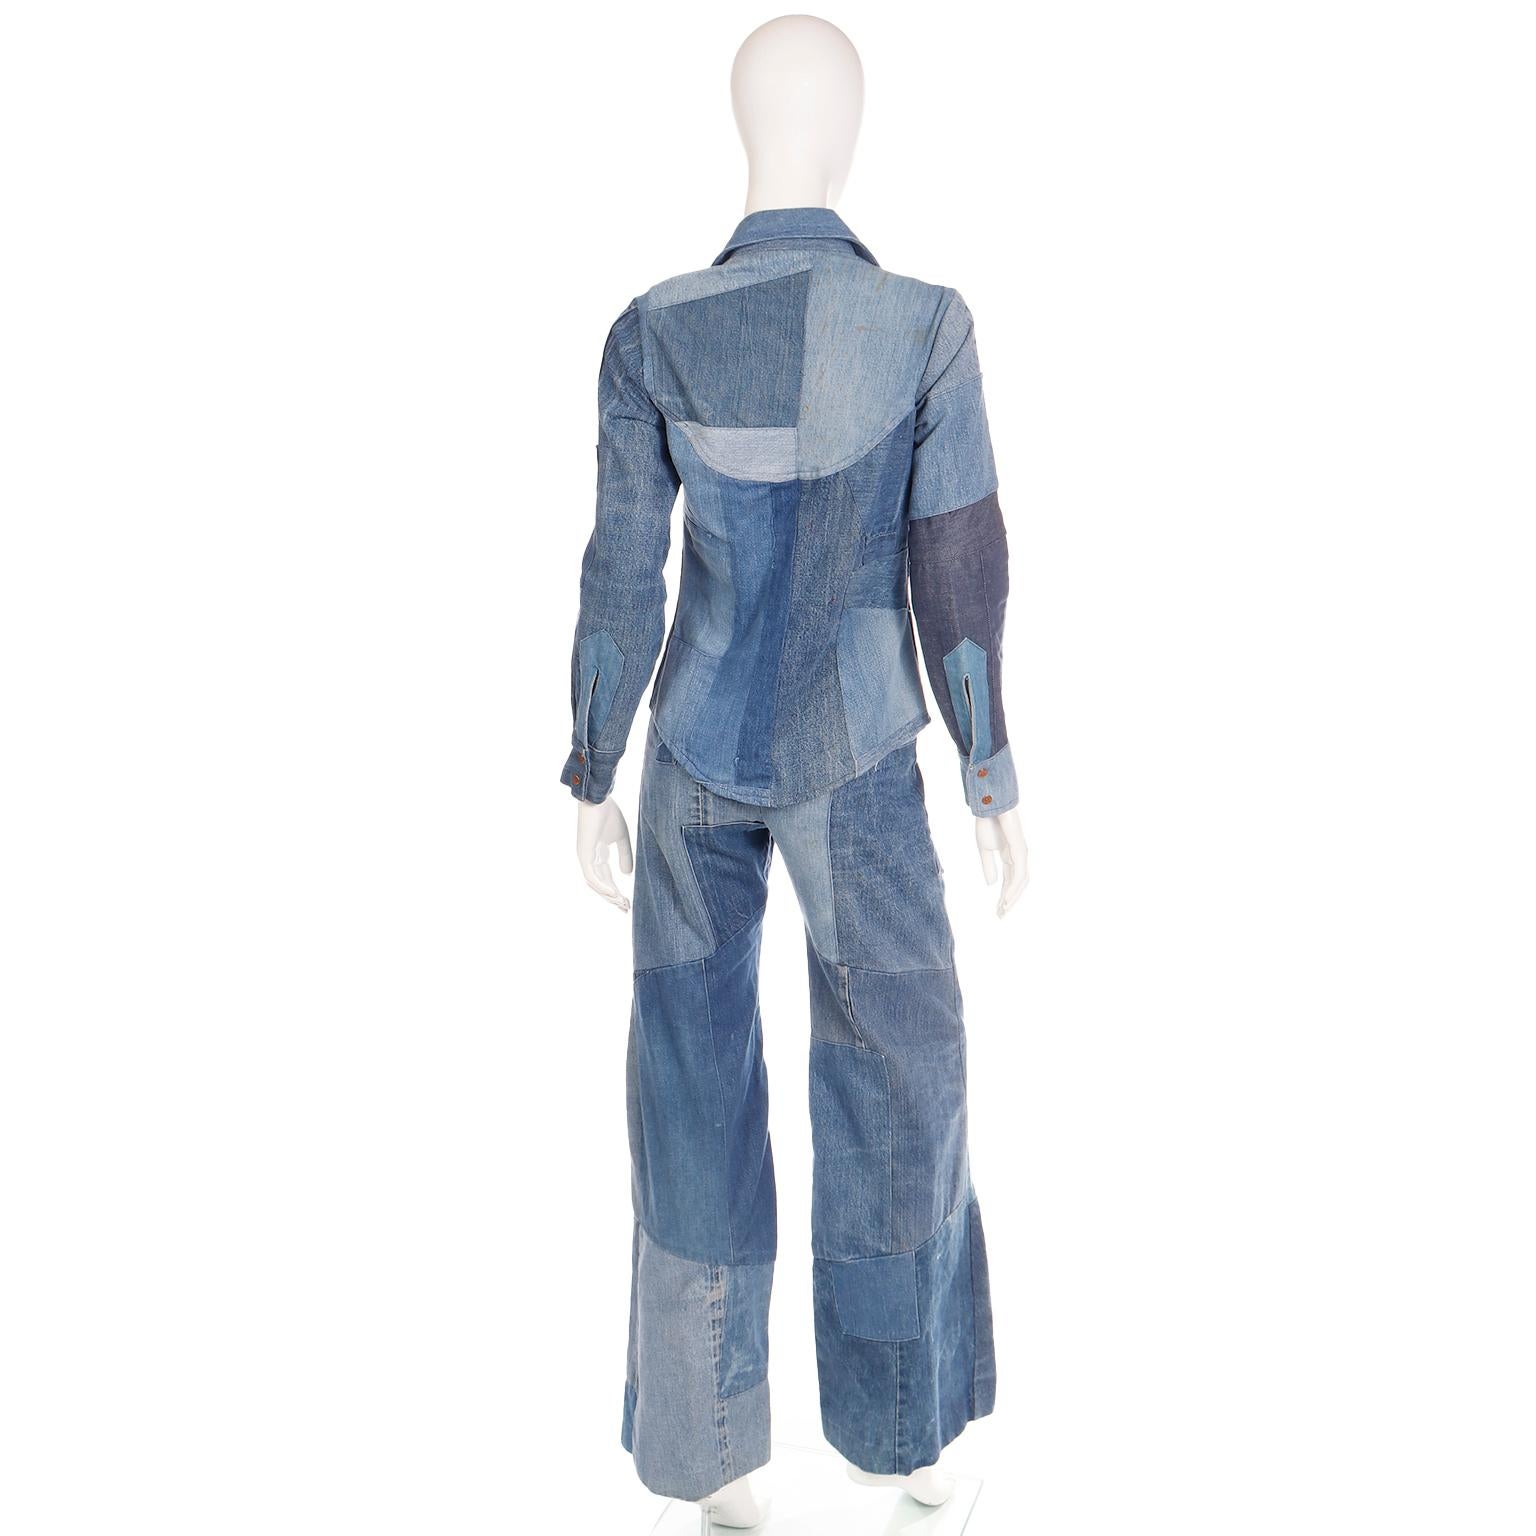 Simis Vintage 1970er Jahre Patchwork-Denim-Jeans und Hemd mit Knopfleiste 2 Teile Outfit für Damen oder Herren